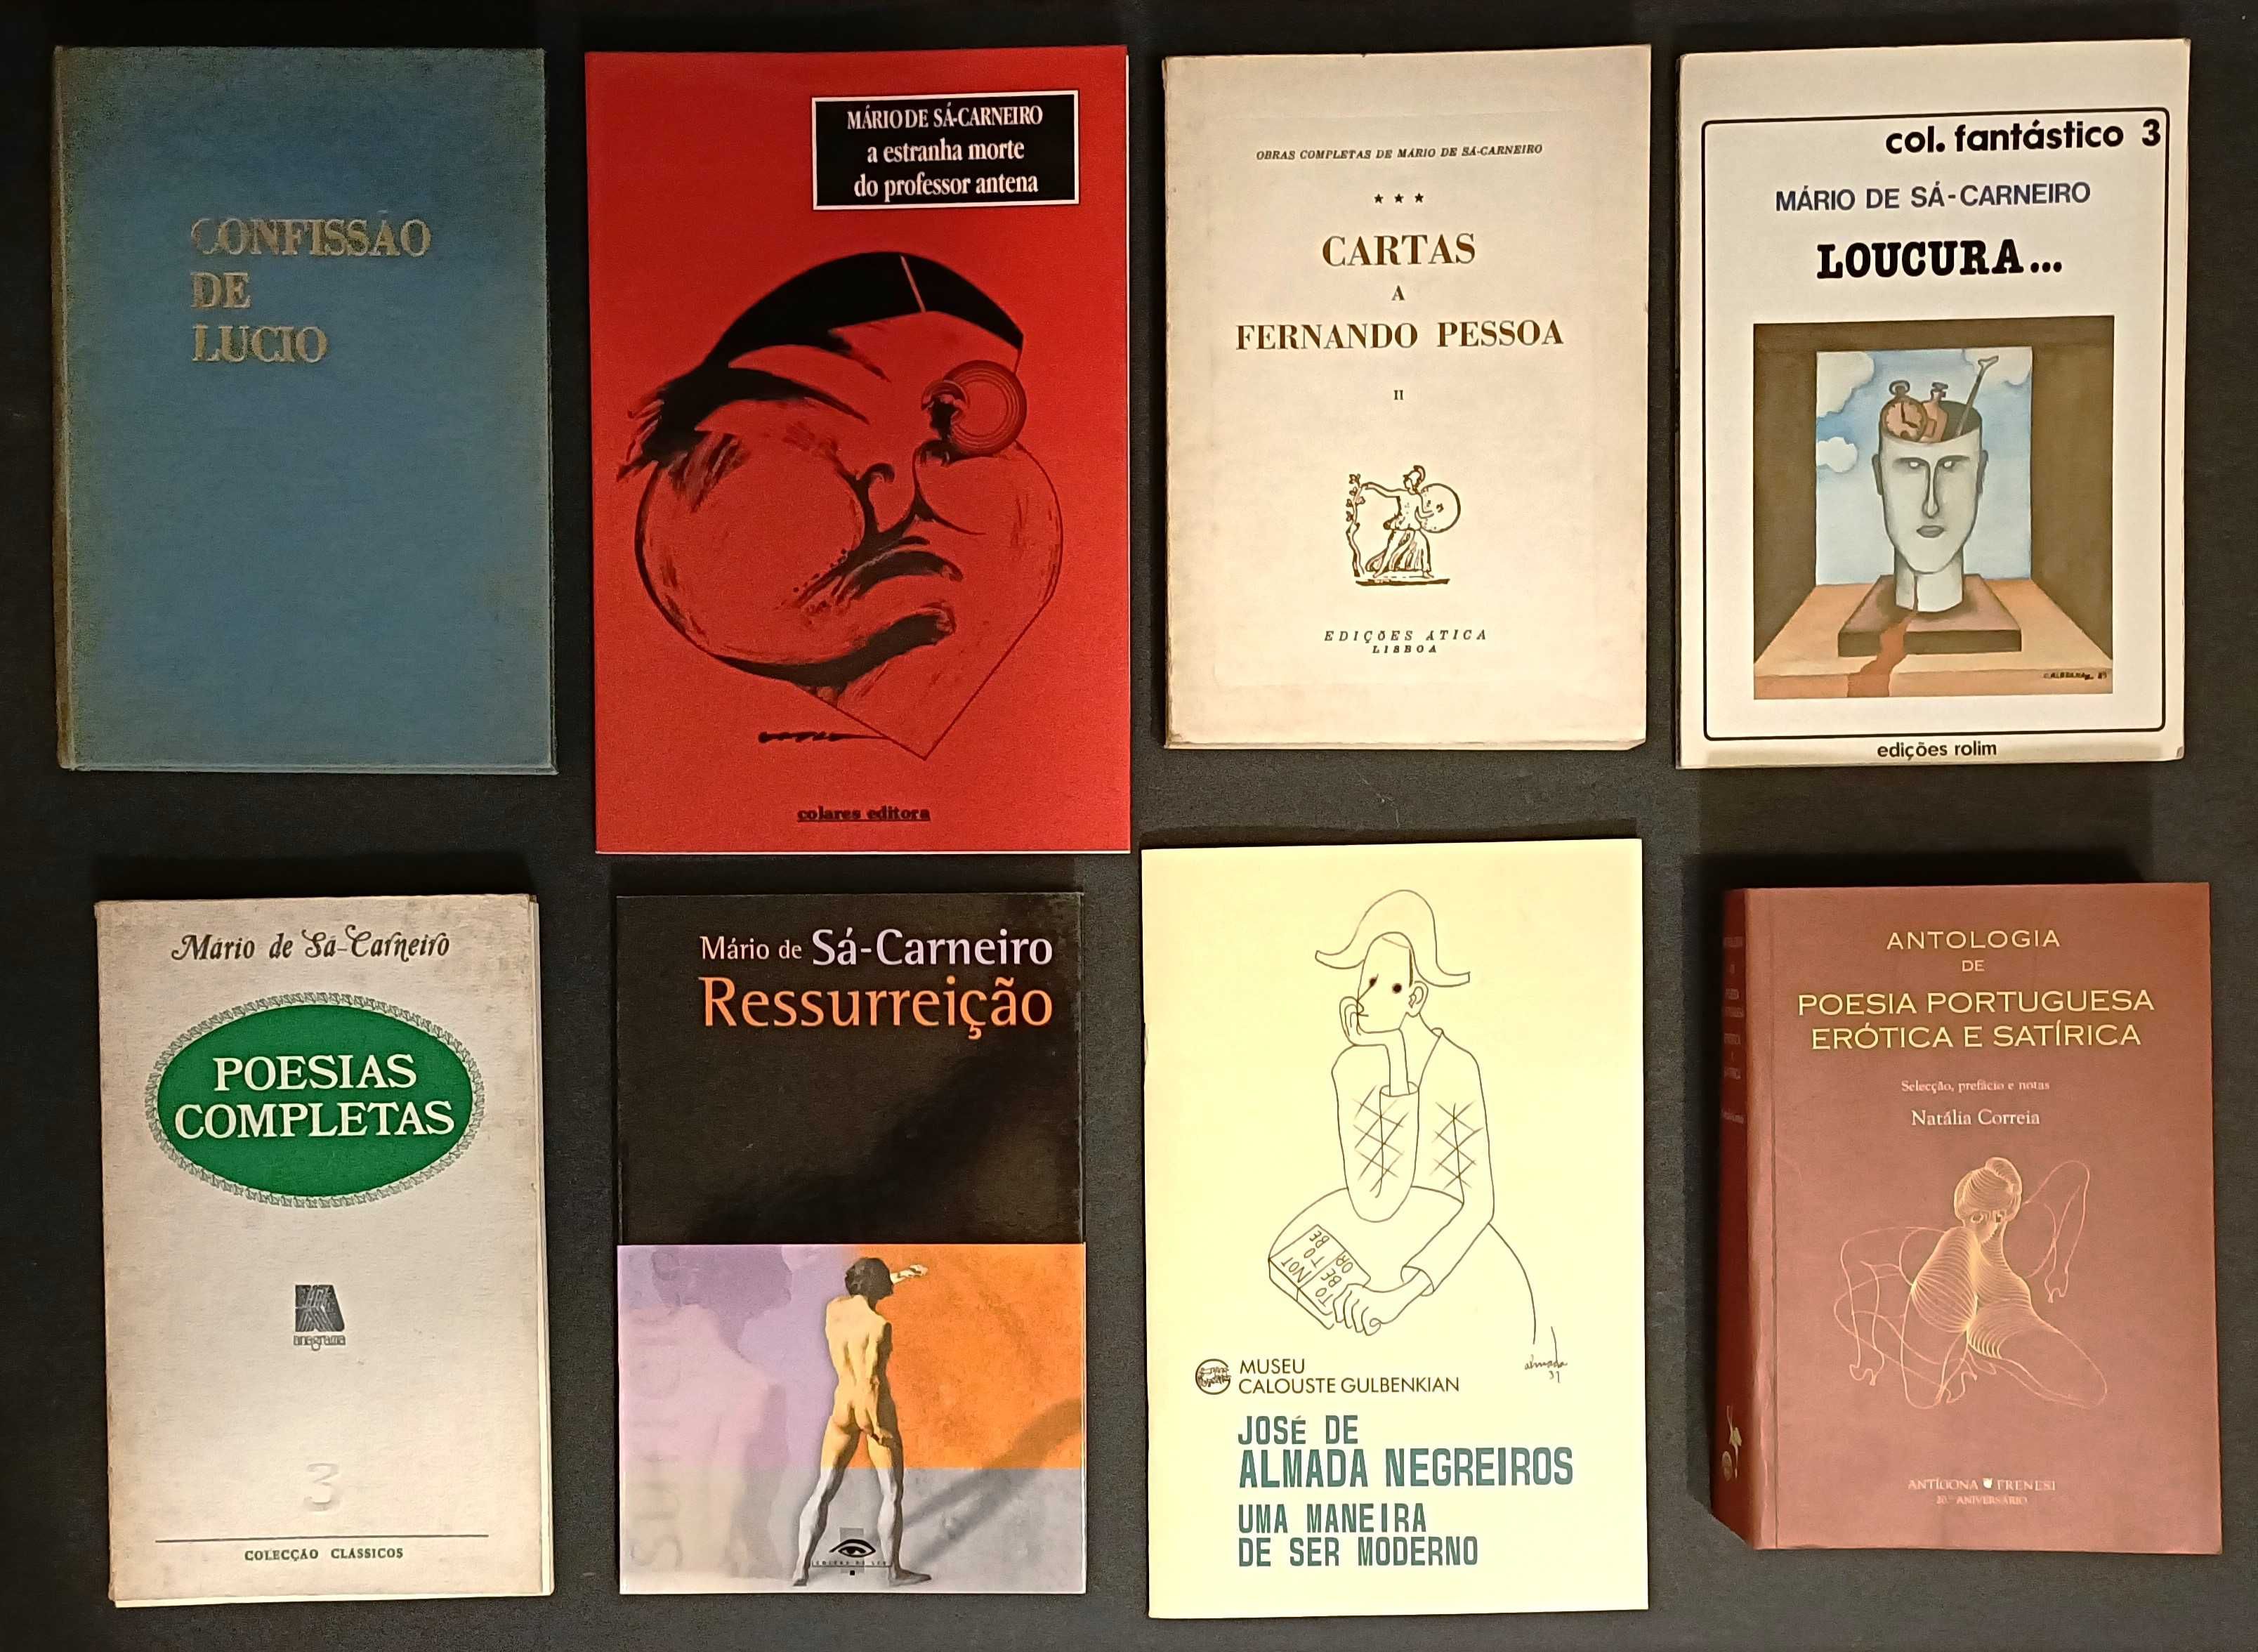 35 livros, principalmente poesia portuguesa. Edições raras. Lote 400€.